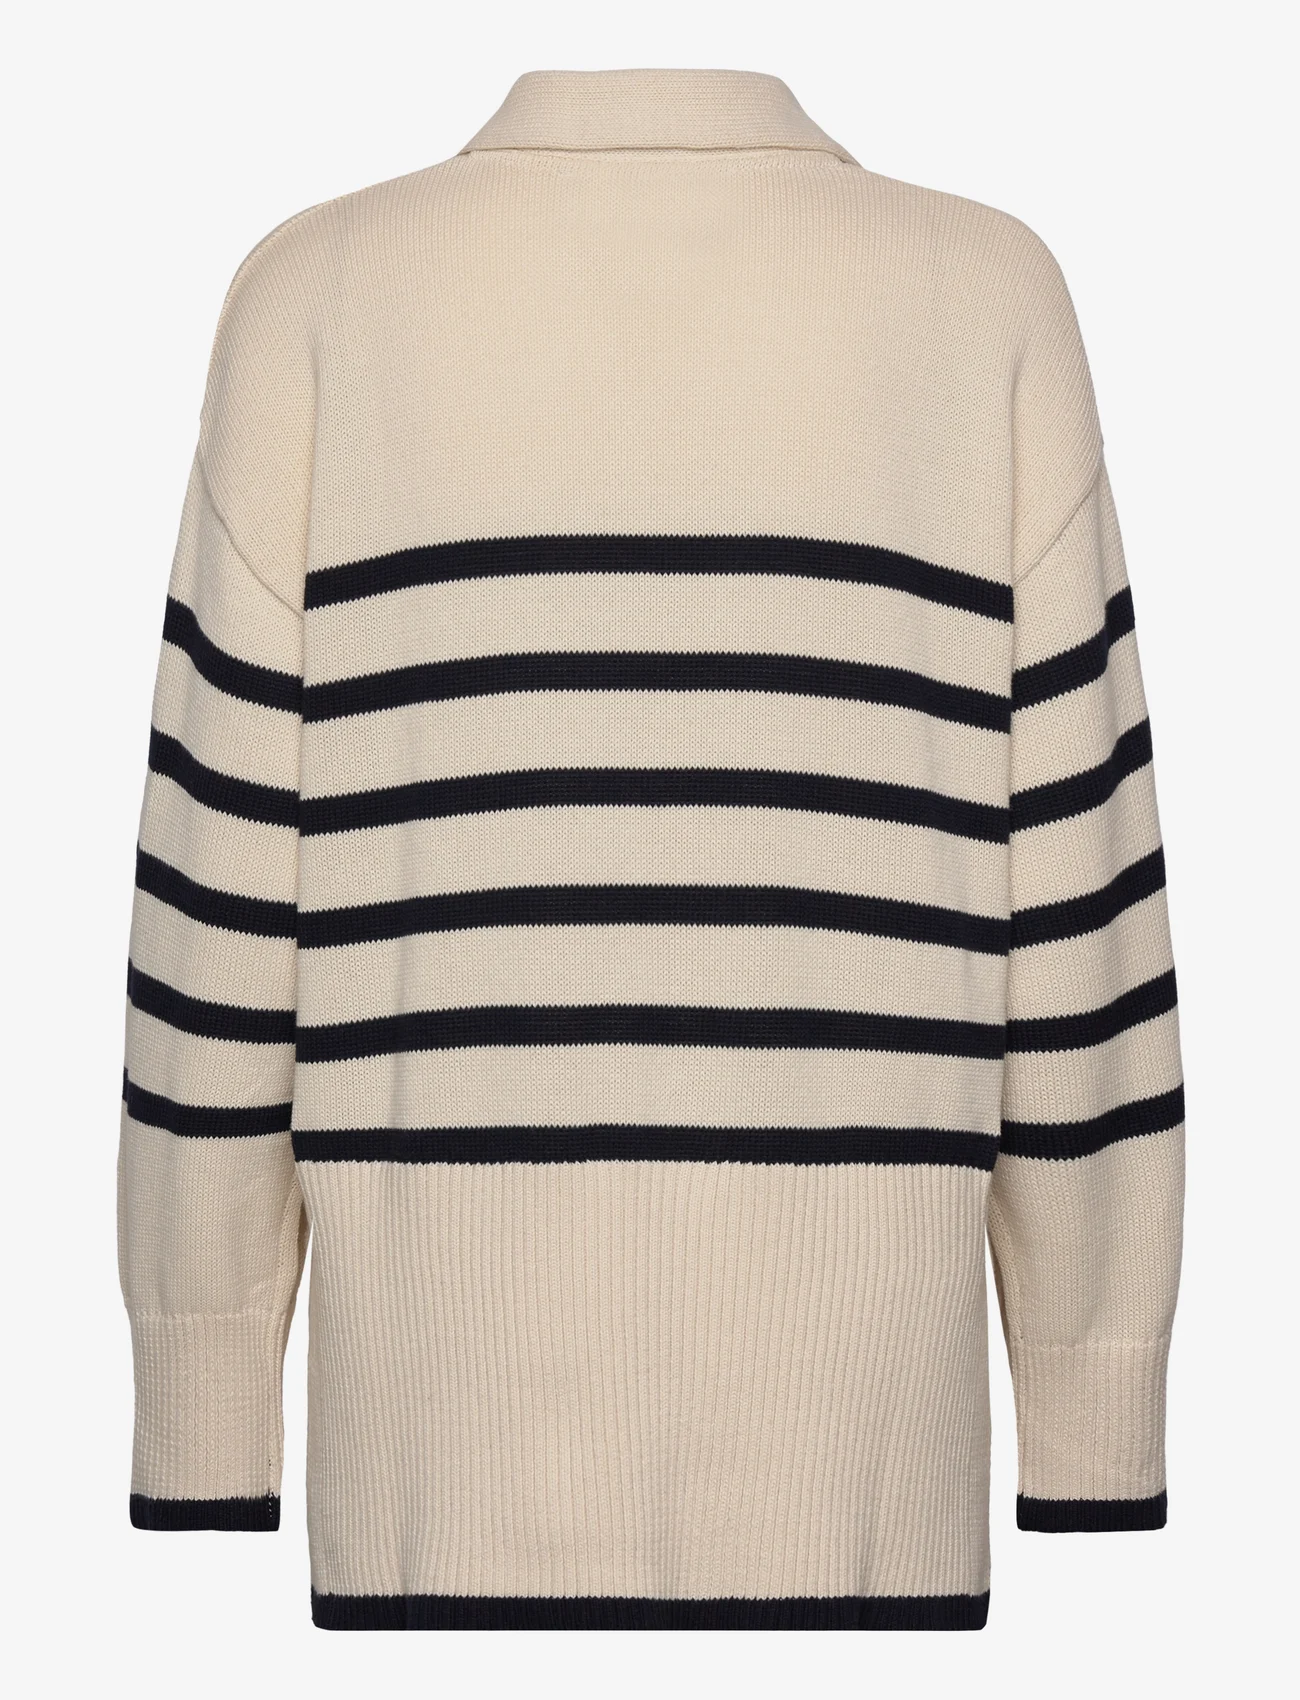 Minus - Leonie Collar Knit Pullover - jumpers - gardenia stripe - 1